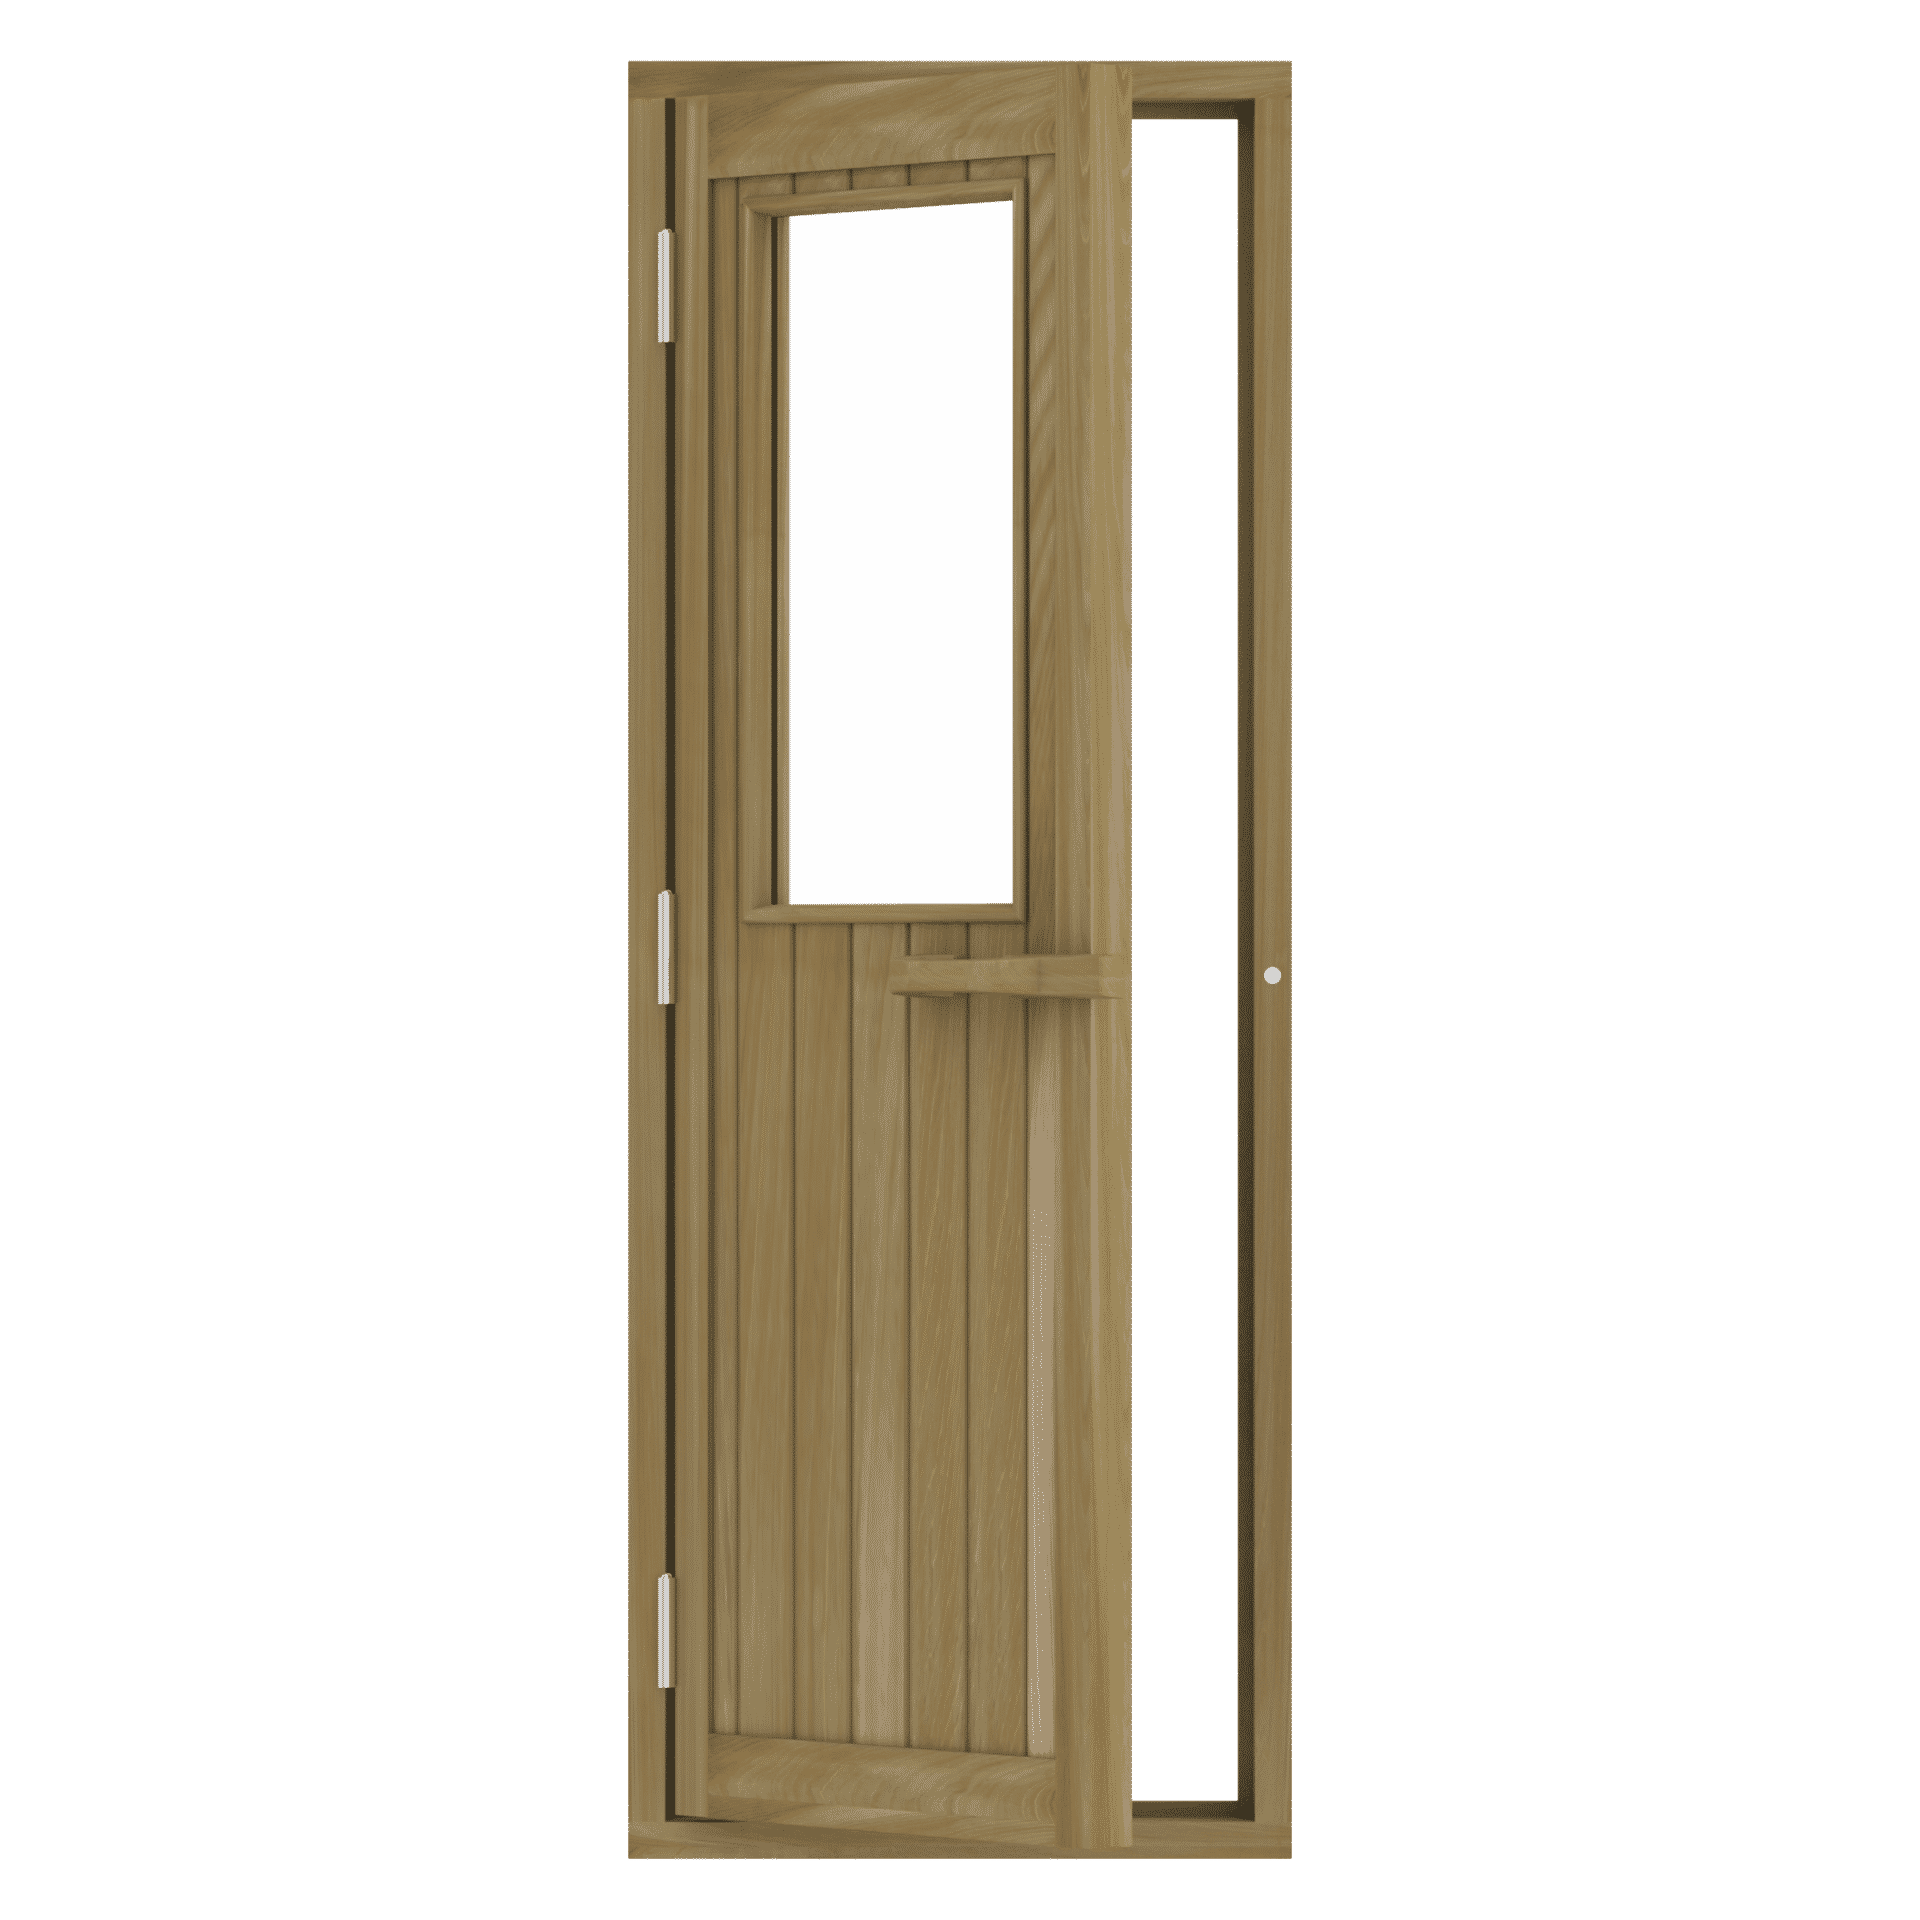 Cedar door with small glass window, 690x1890 mm (Left handle)